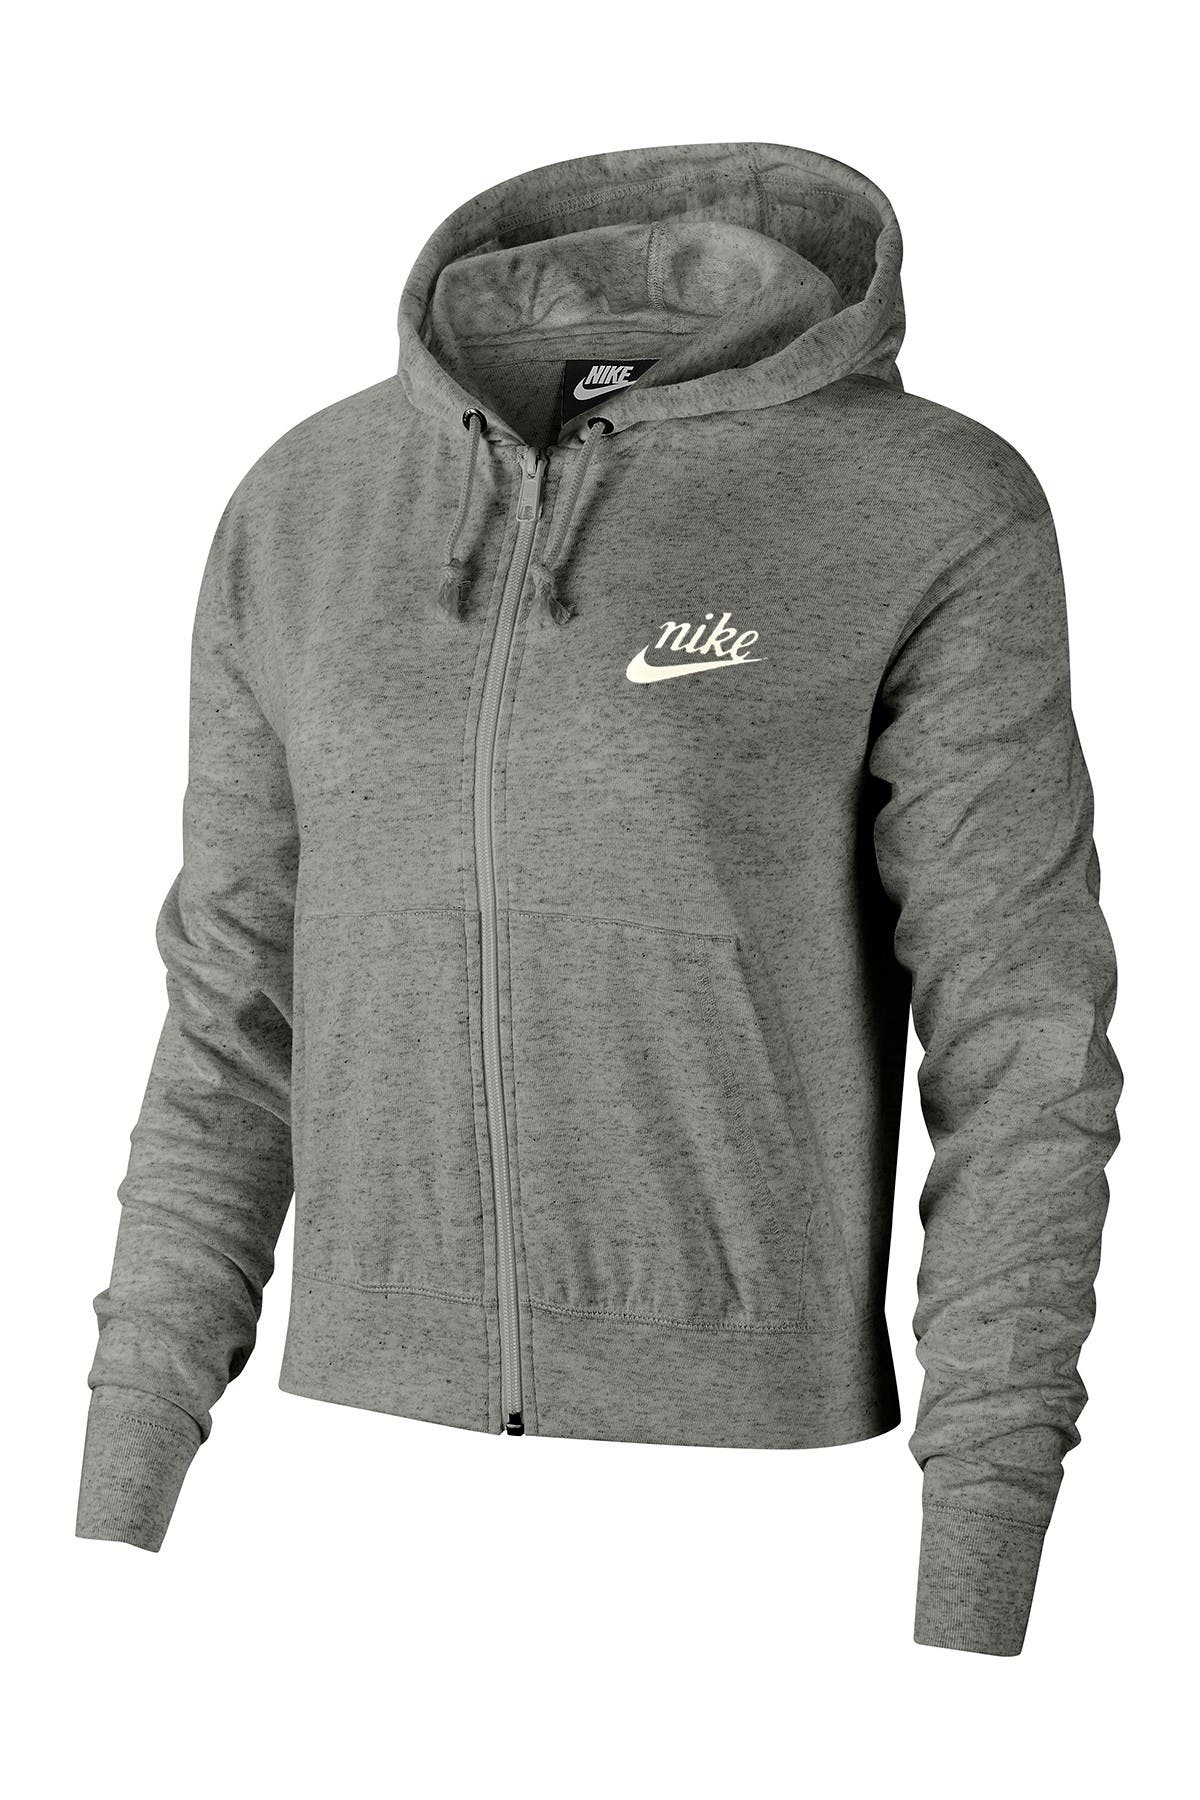 grey nike zip up hoodie womens